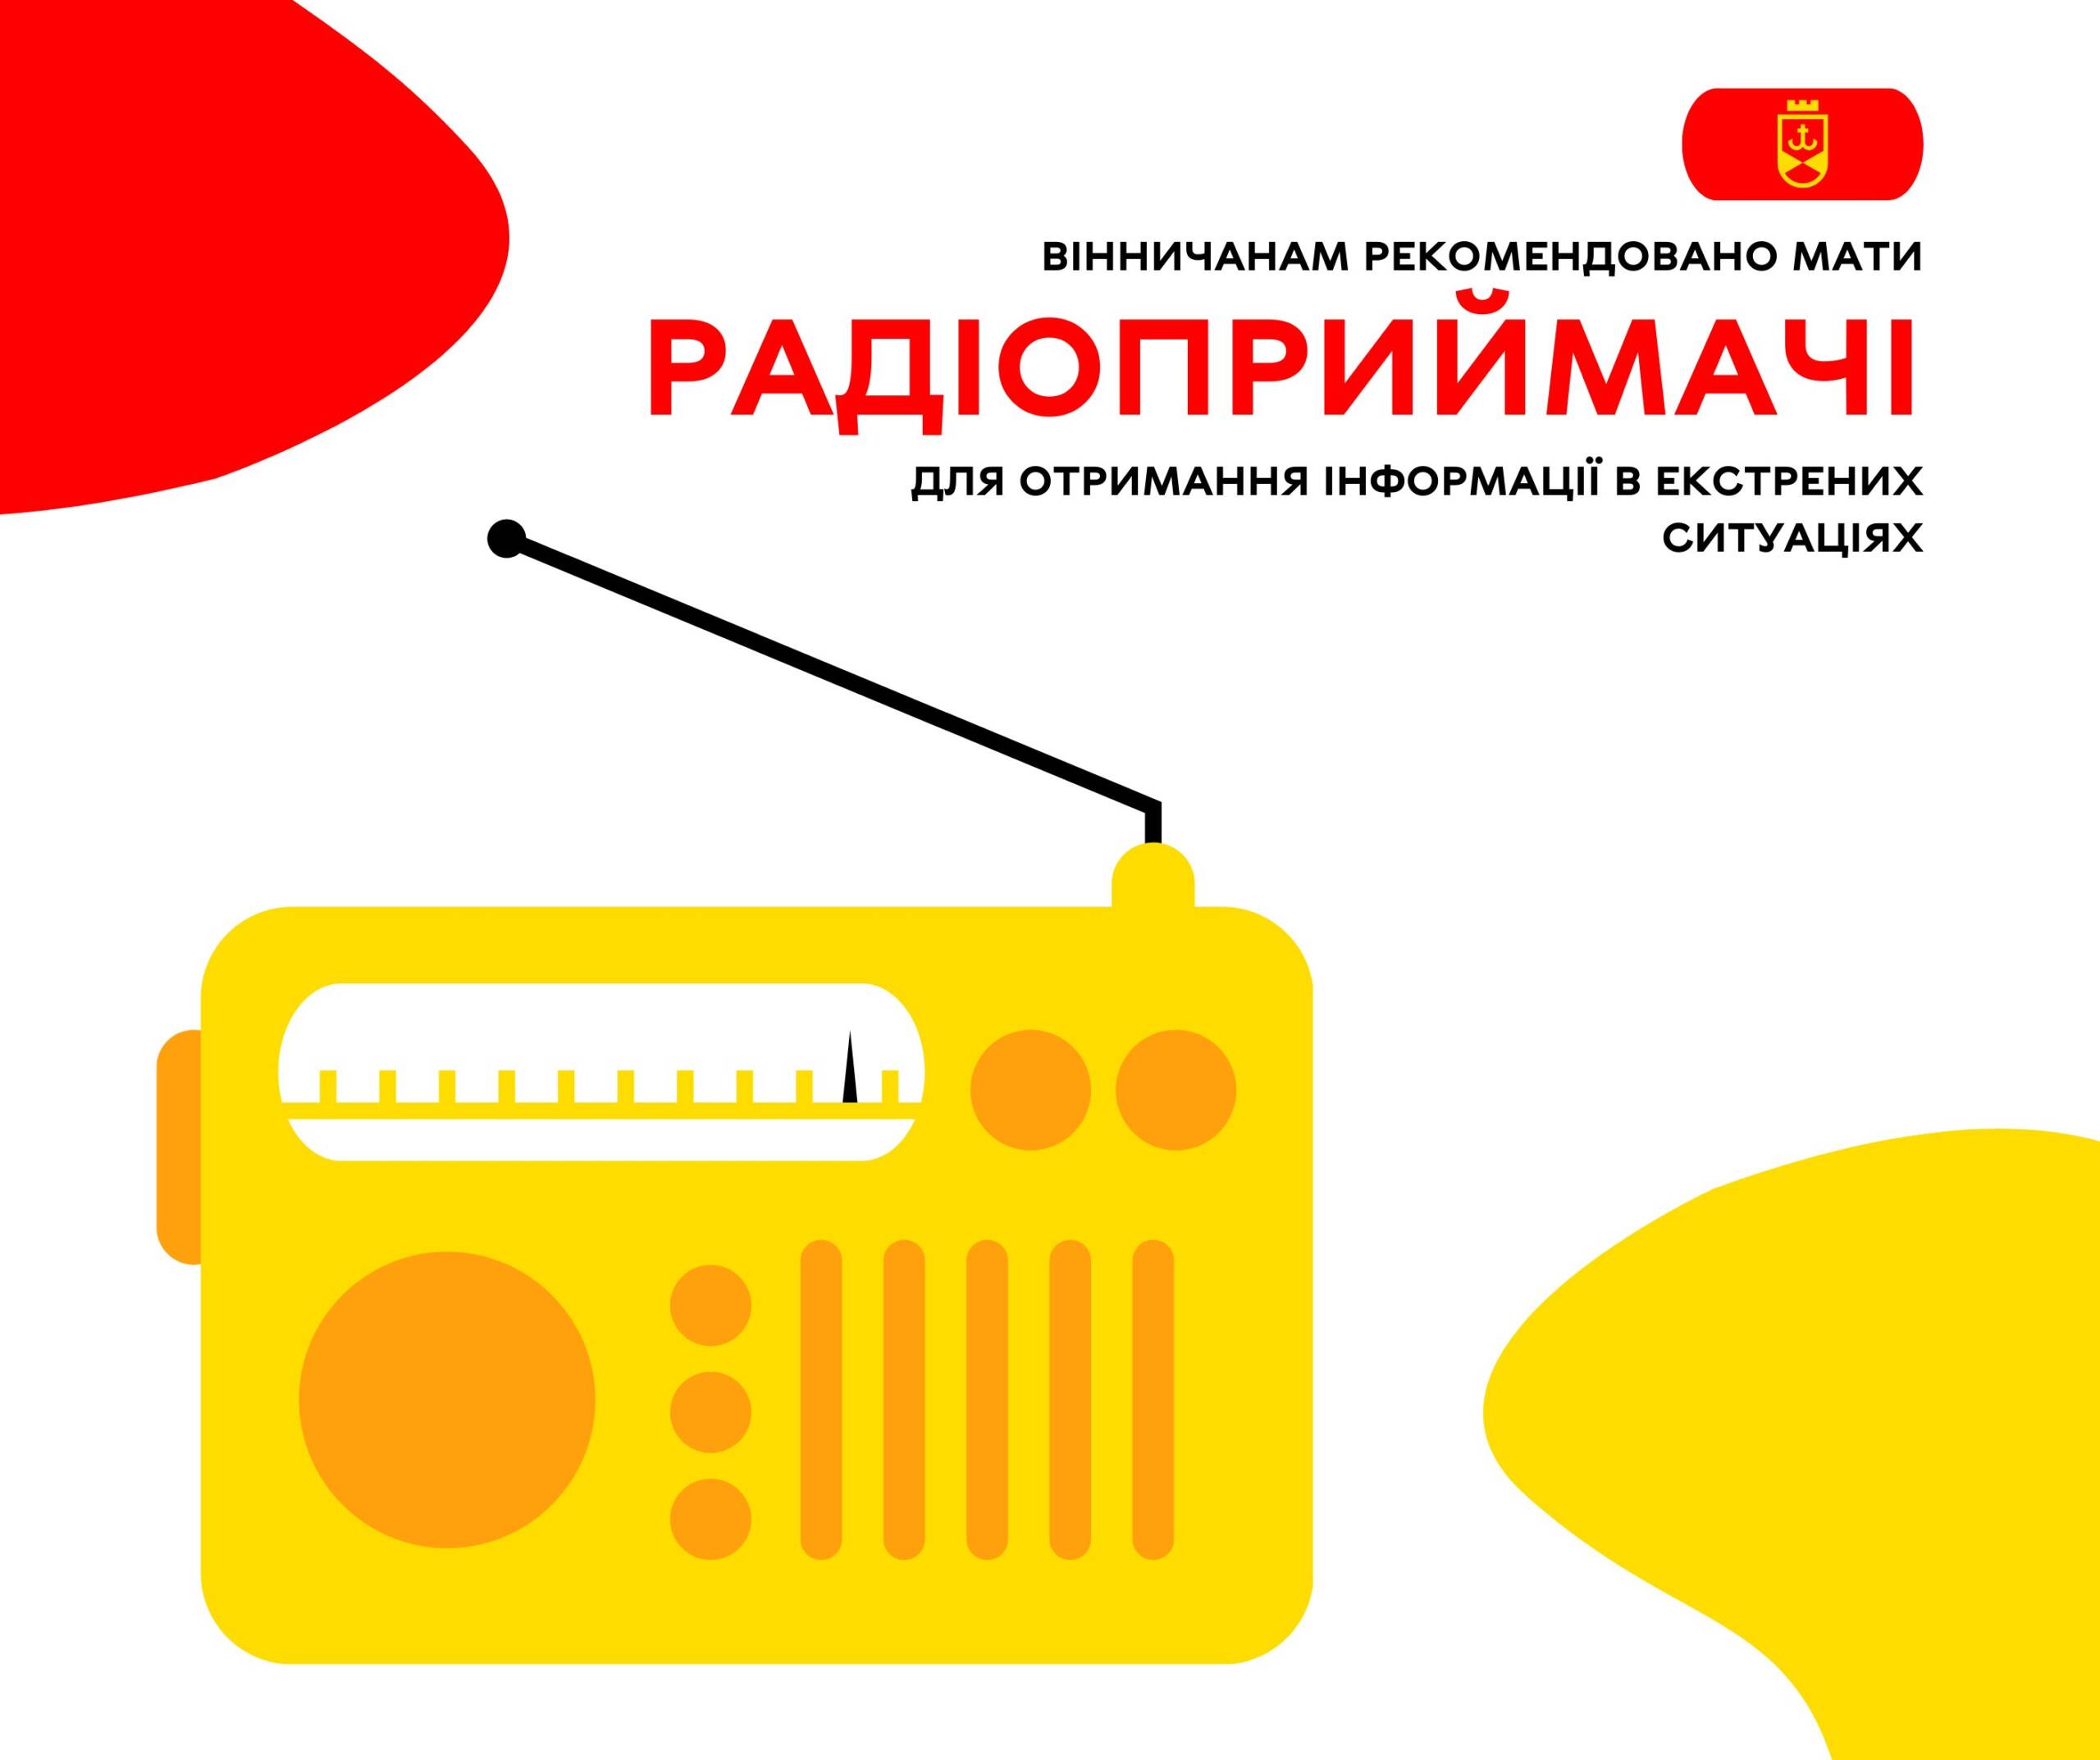 Вінничанам рекомендовано мати радіоприймачі для отримання інформації в екстрених ситуаціях